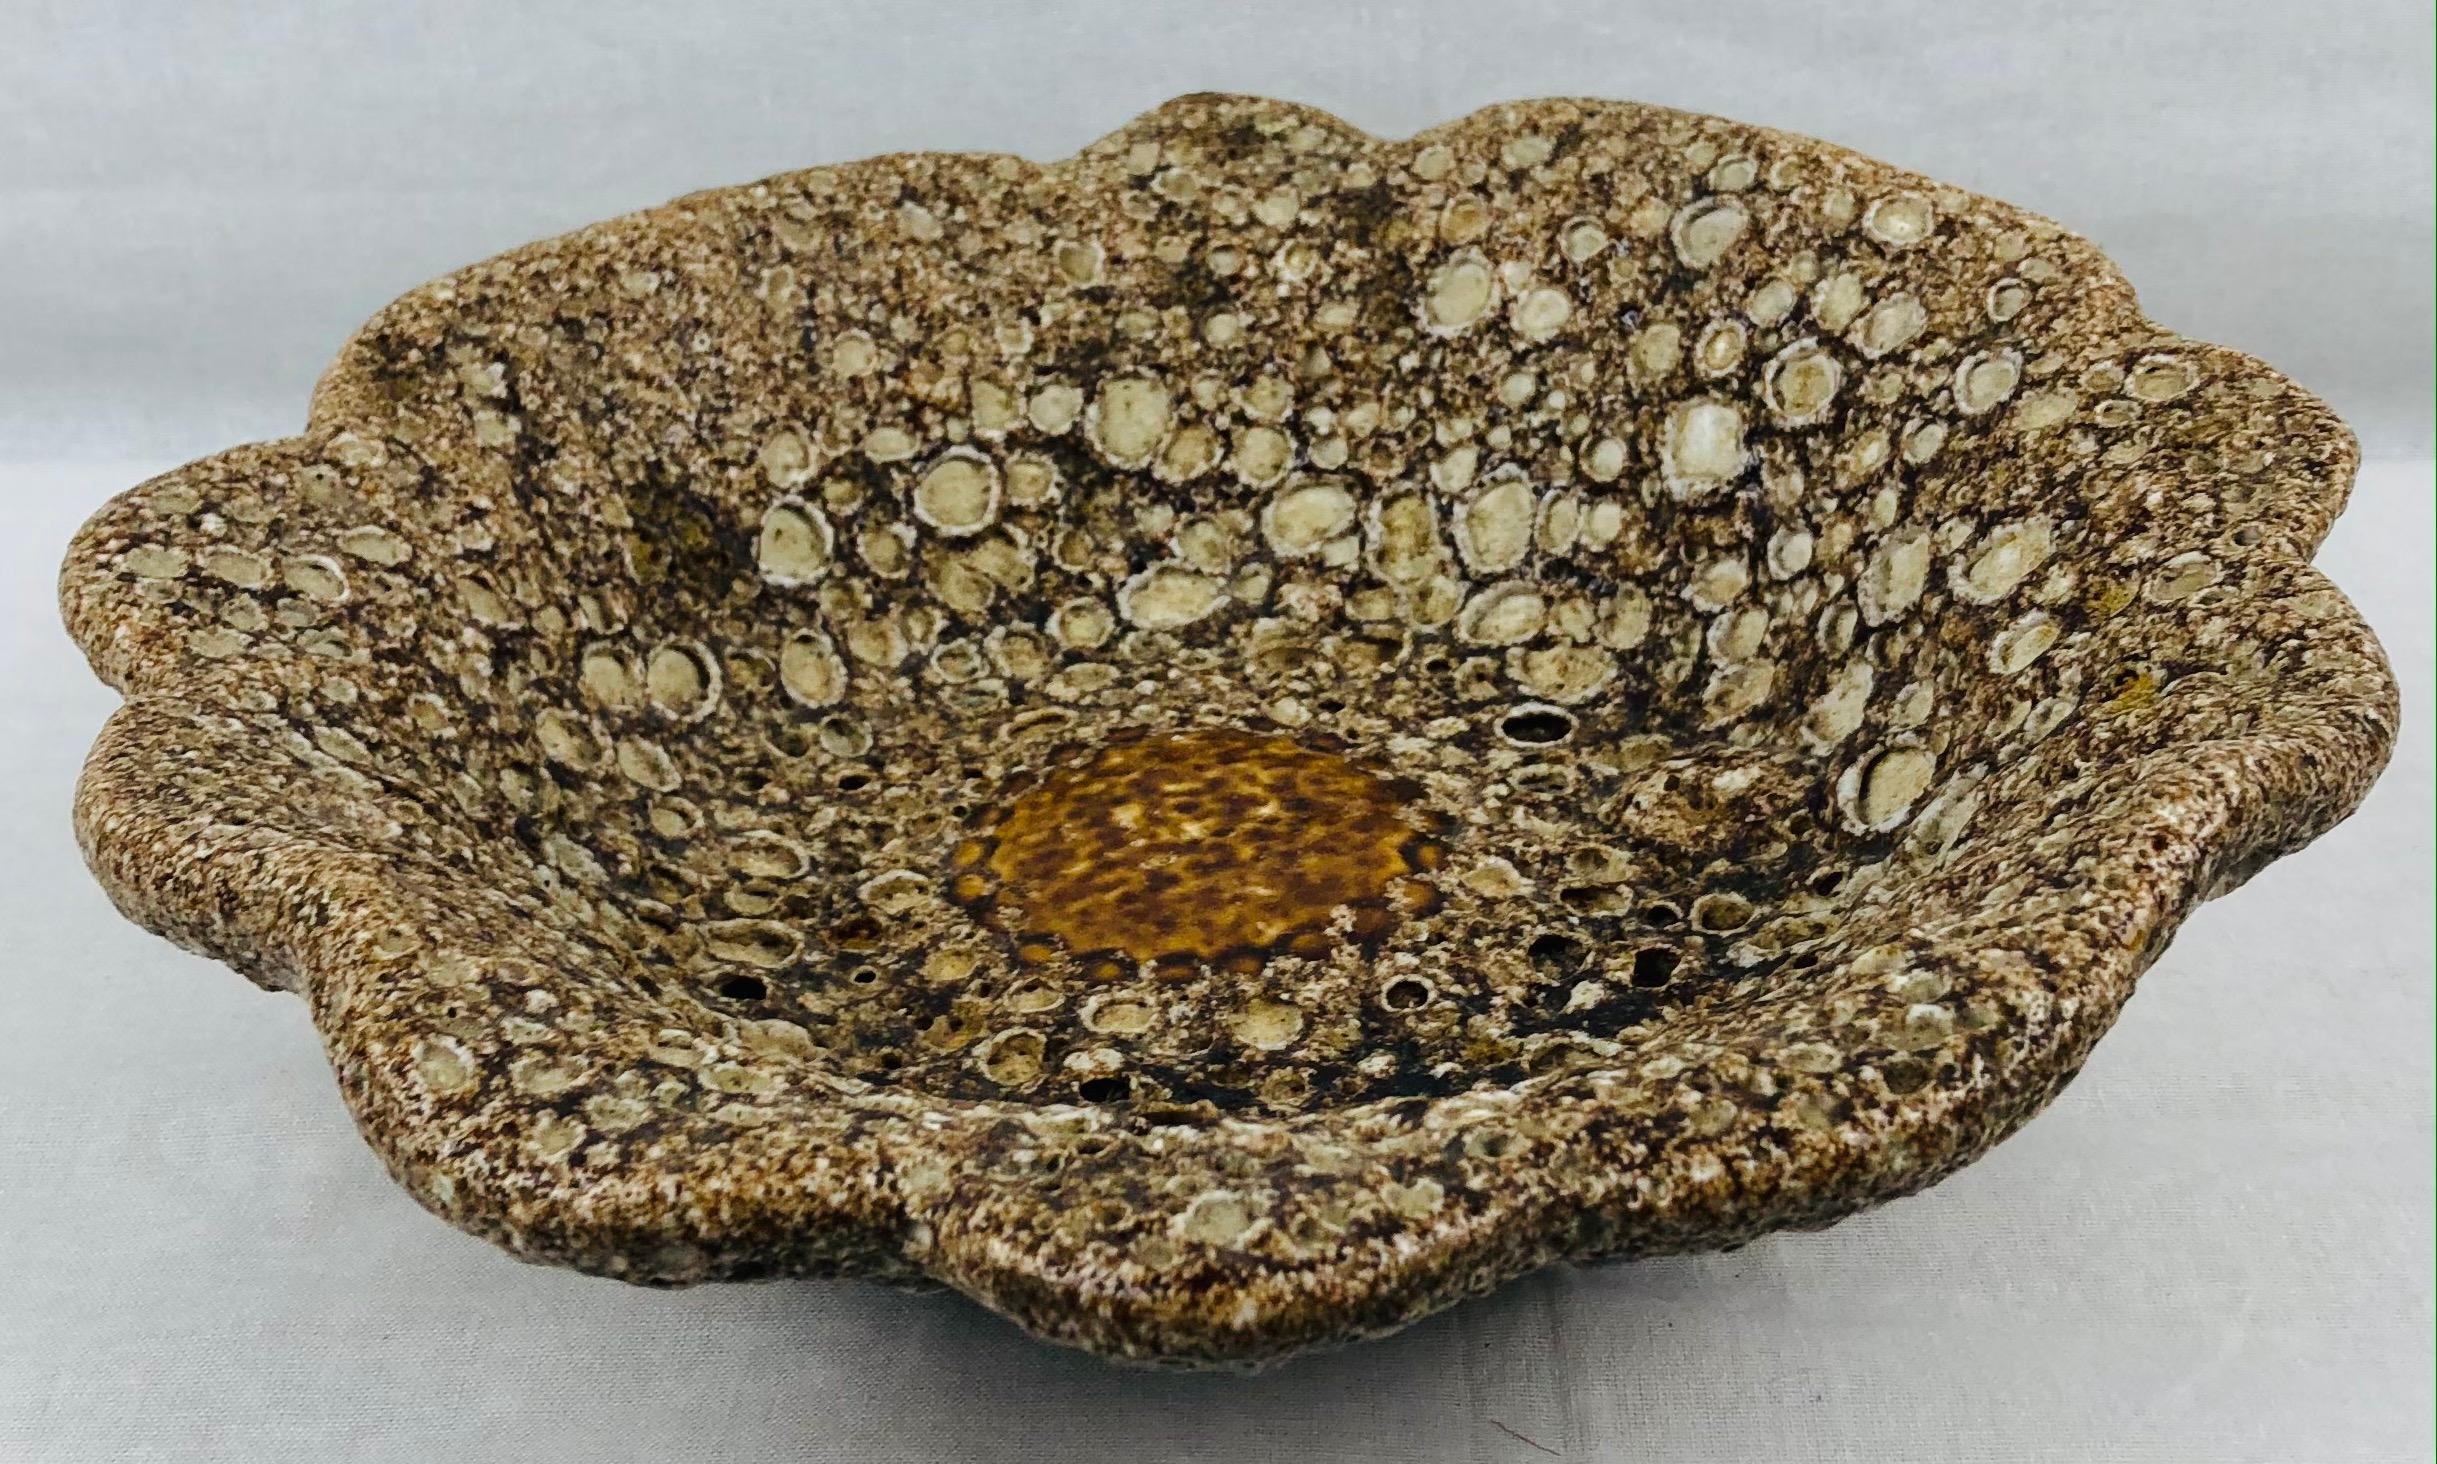 Eine wunderbare dekorative Schale aus Vallauris, die in der Art der fetten Lava-Keramik von Charles Cart hergestellt wurde. 

Durch den Brennvorgang werden die vielen Schichten unter der mehrfarbigen Glasur sichtbar, so dass der Eindruck von Lava